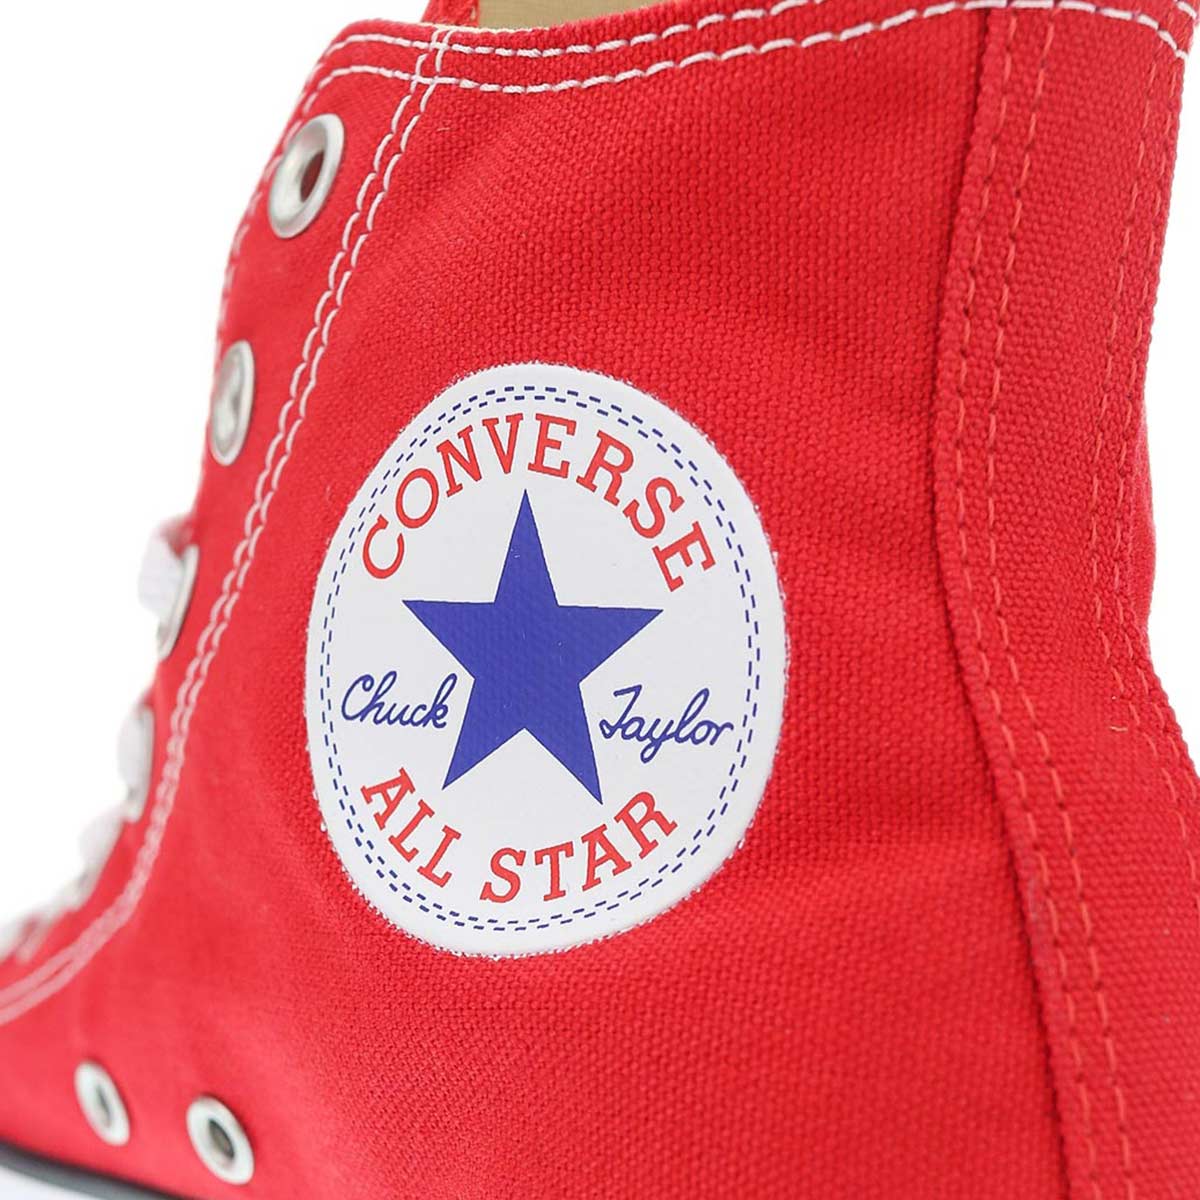 Converse All Star Chucks Hi Canvas M9621C-